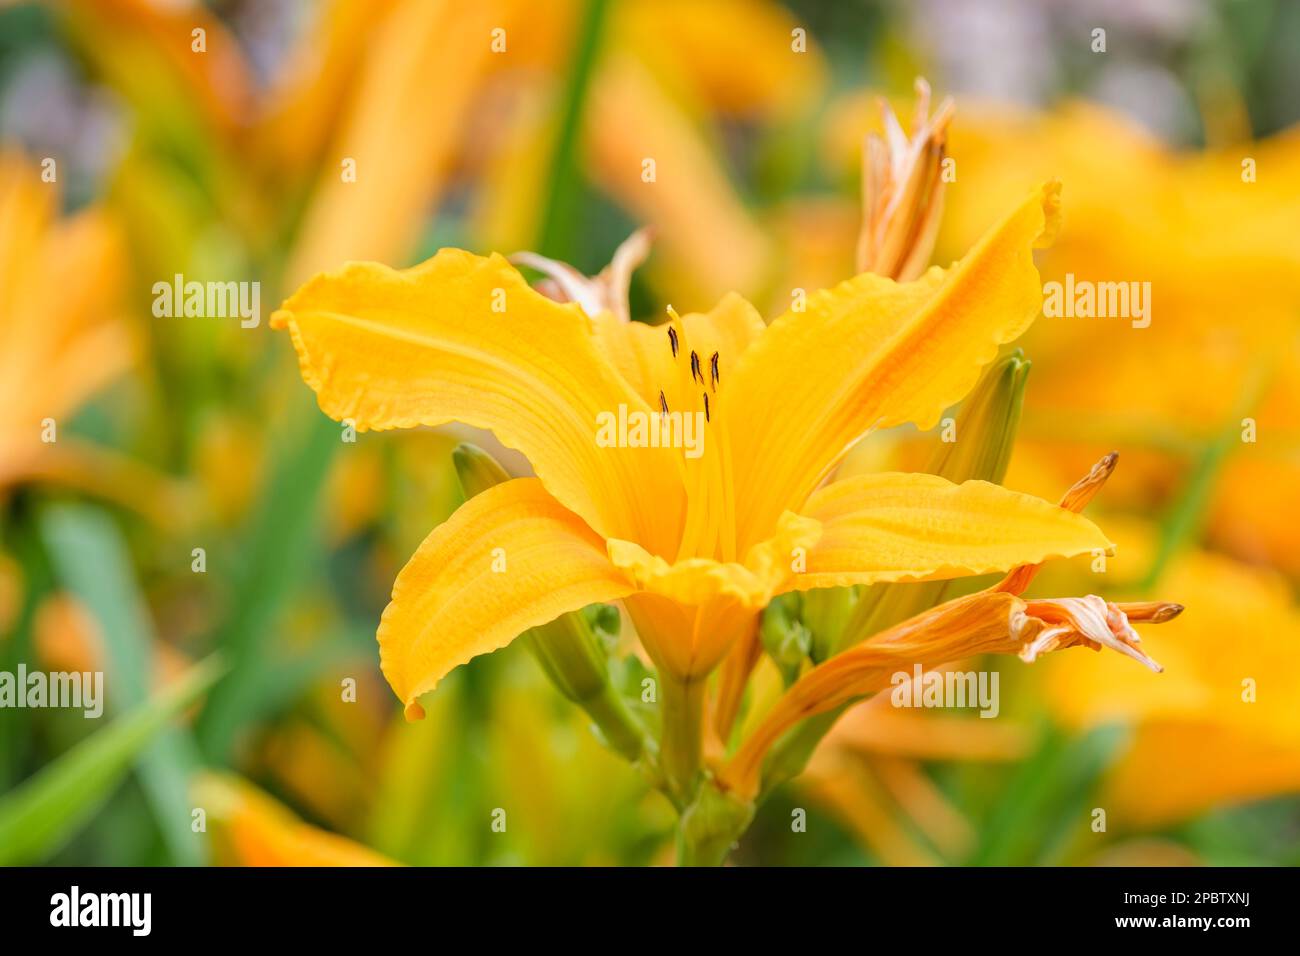 Hemerocallis che brucia la luce del giorno, giorno che brucia la luce del giorno, arancione intenso-giallo, fiori a forma di tromba Foto Stock